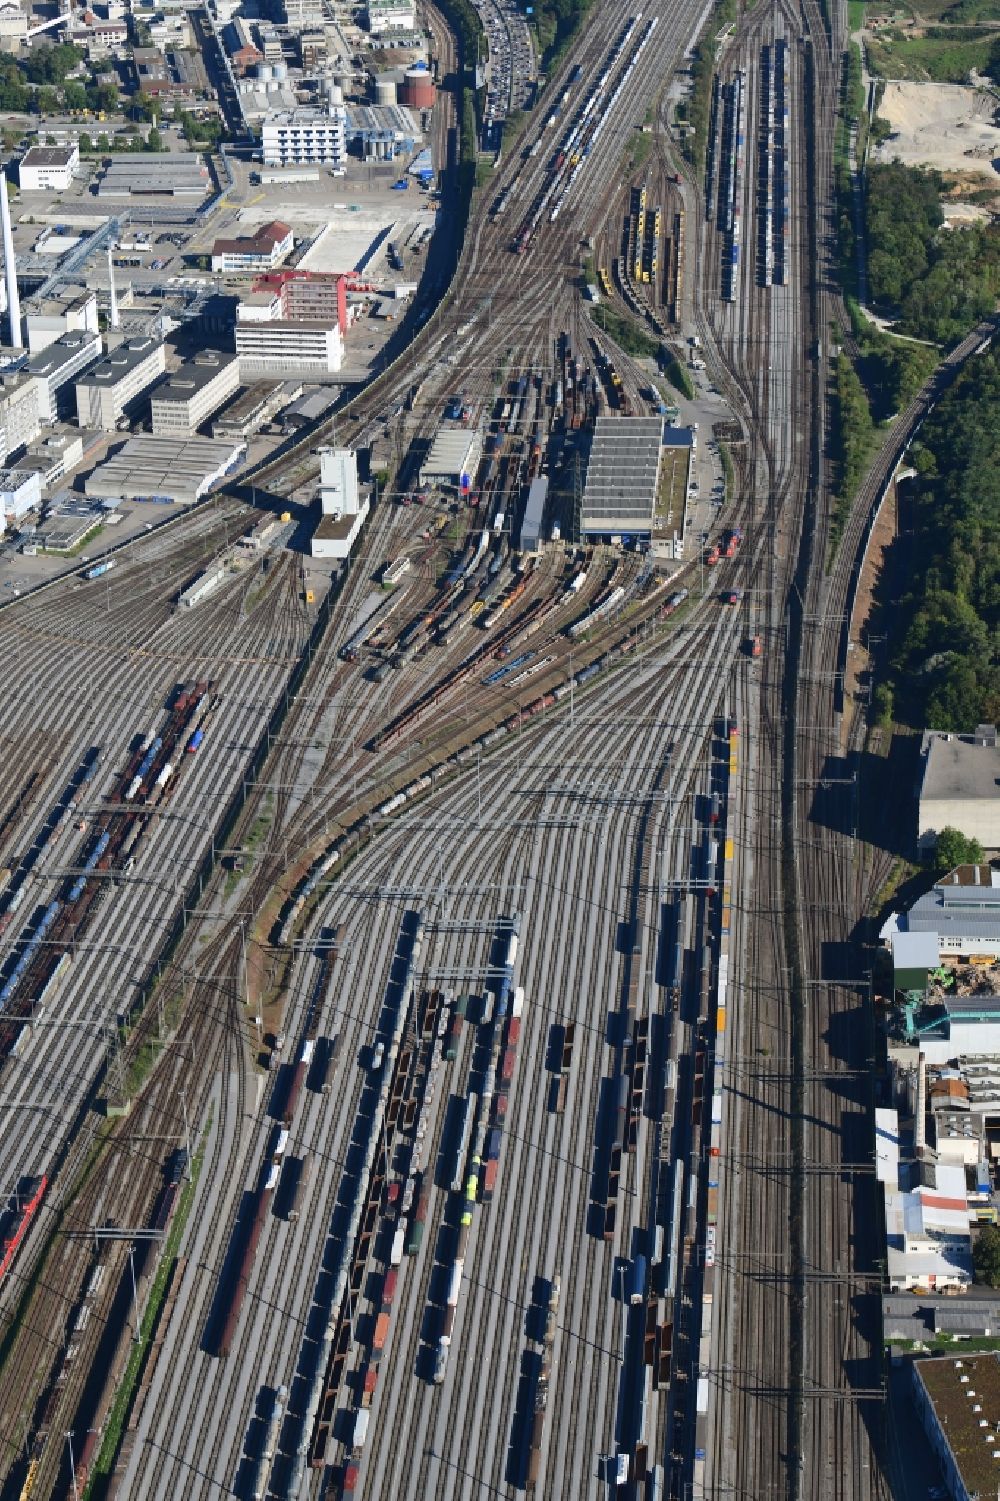 Muttenz von oben - Schienen, Gleise und Züge im Streckennetz der Schweizer Bahn beim Rangierbahnhof in Muttenz im Kanton Basel-Landschaft, Schweiz